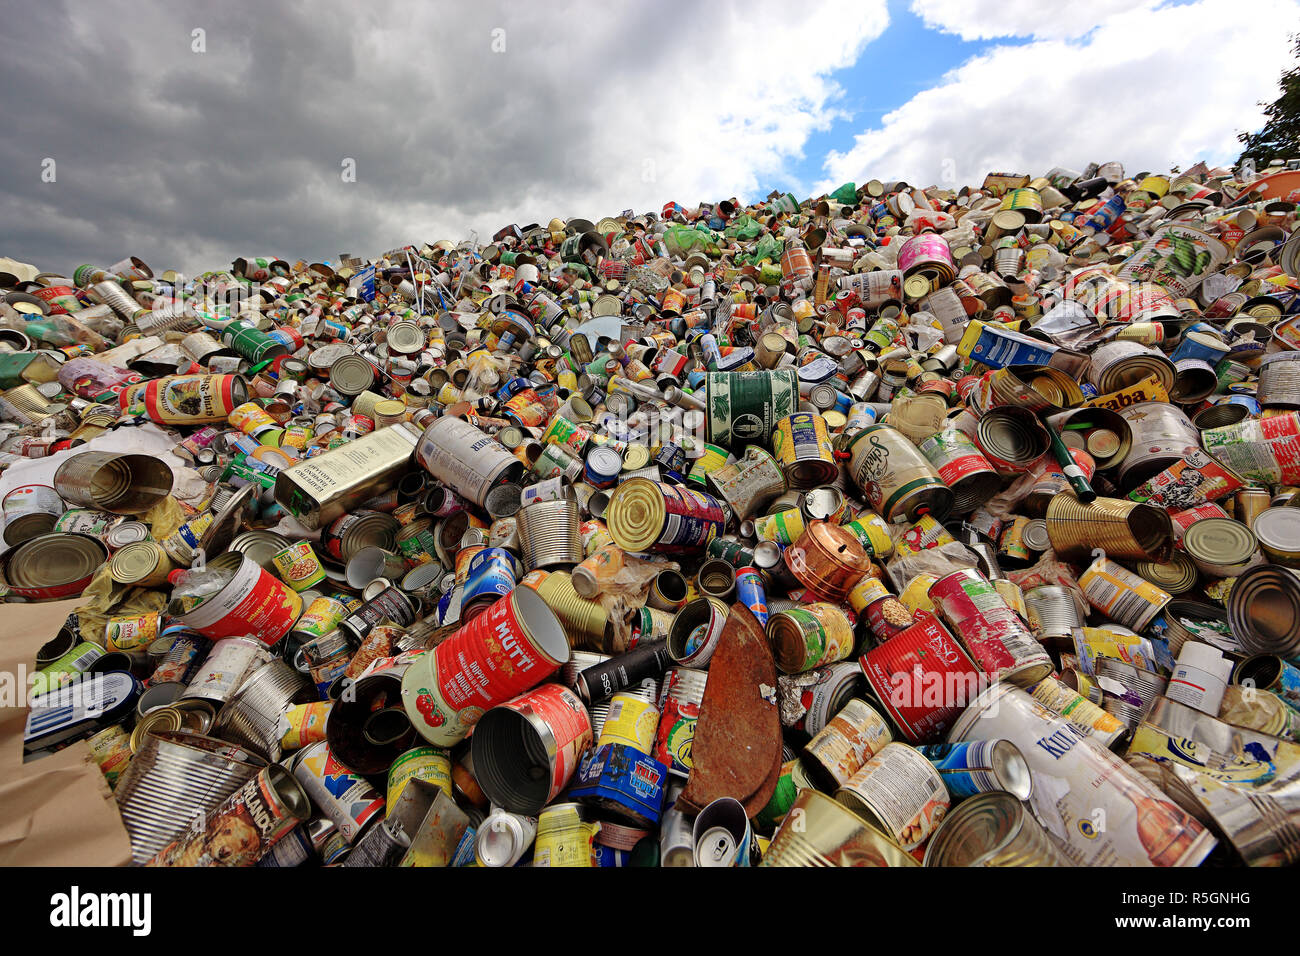 De stockage, d'élimination des déchets pour recyclage, canettes de boisson, Weissblech, Allemagne Banque D'Images